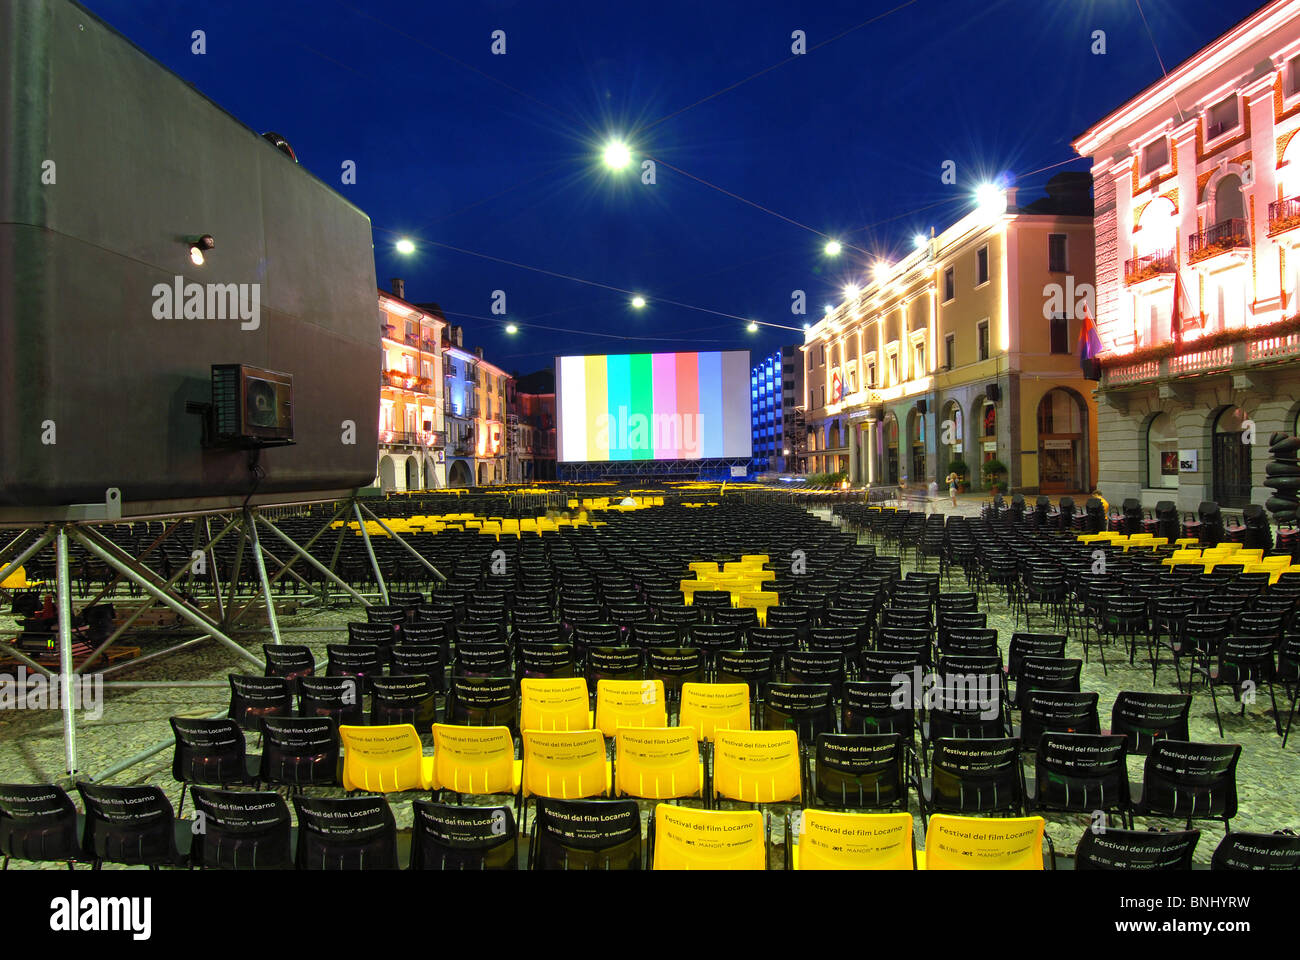 La Svizzera film festival Locarno city International Film Festival Piazza grande cinema all'esterno sedi dello schermo vuoto movie Foto Stock